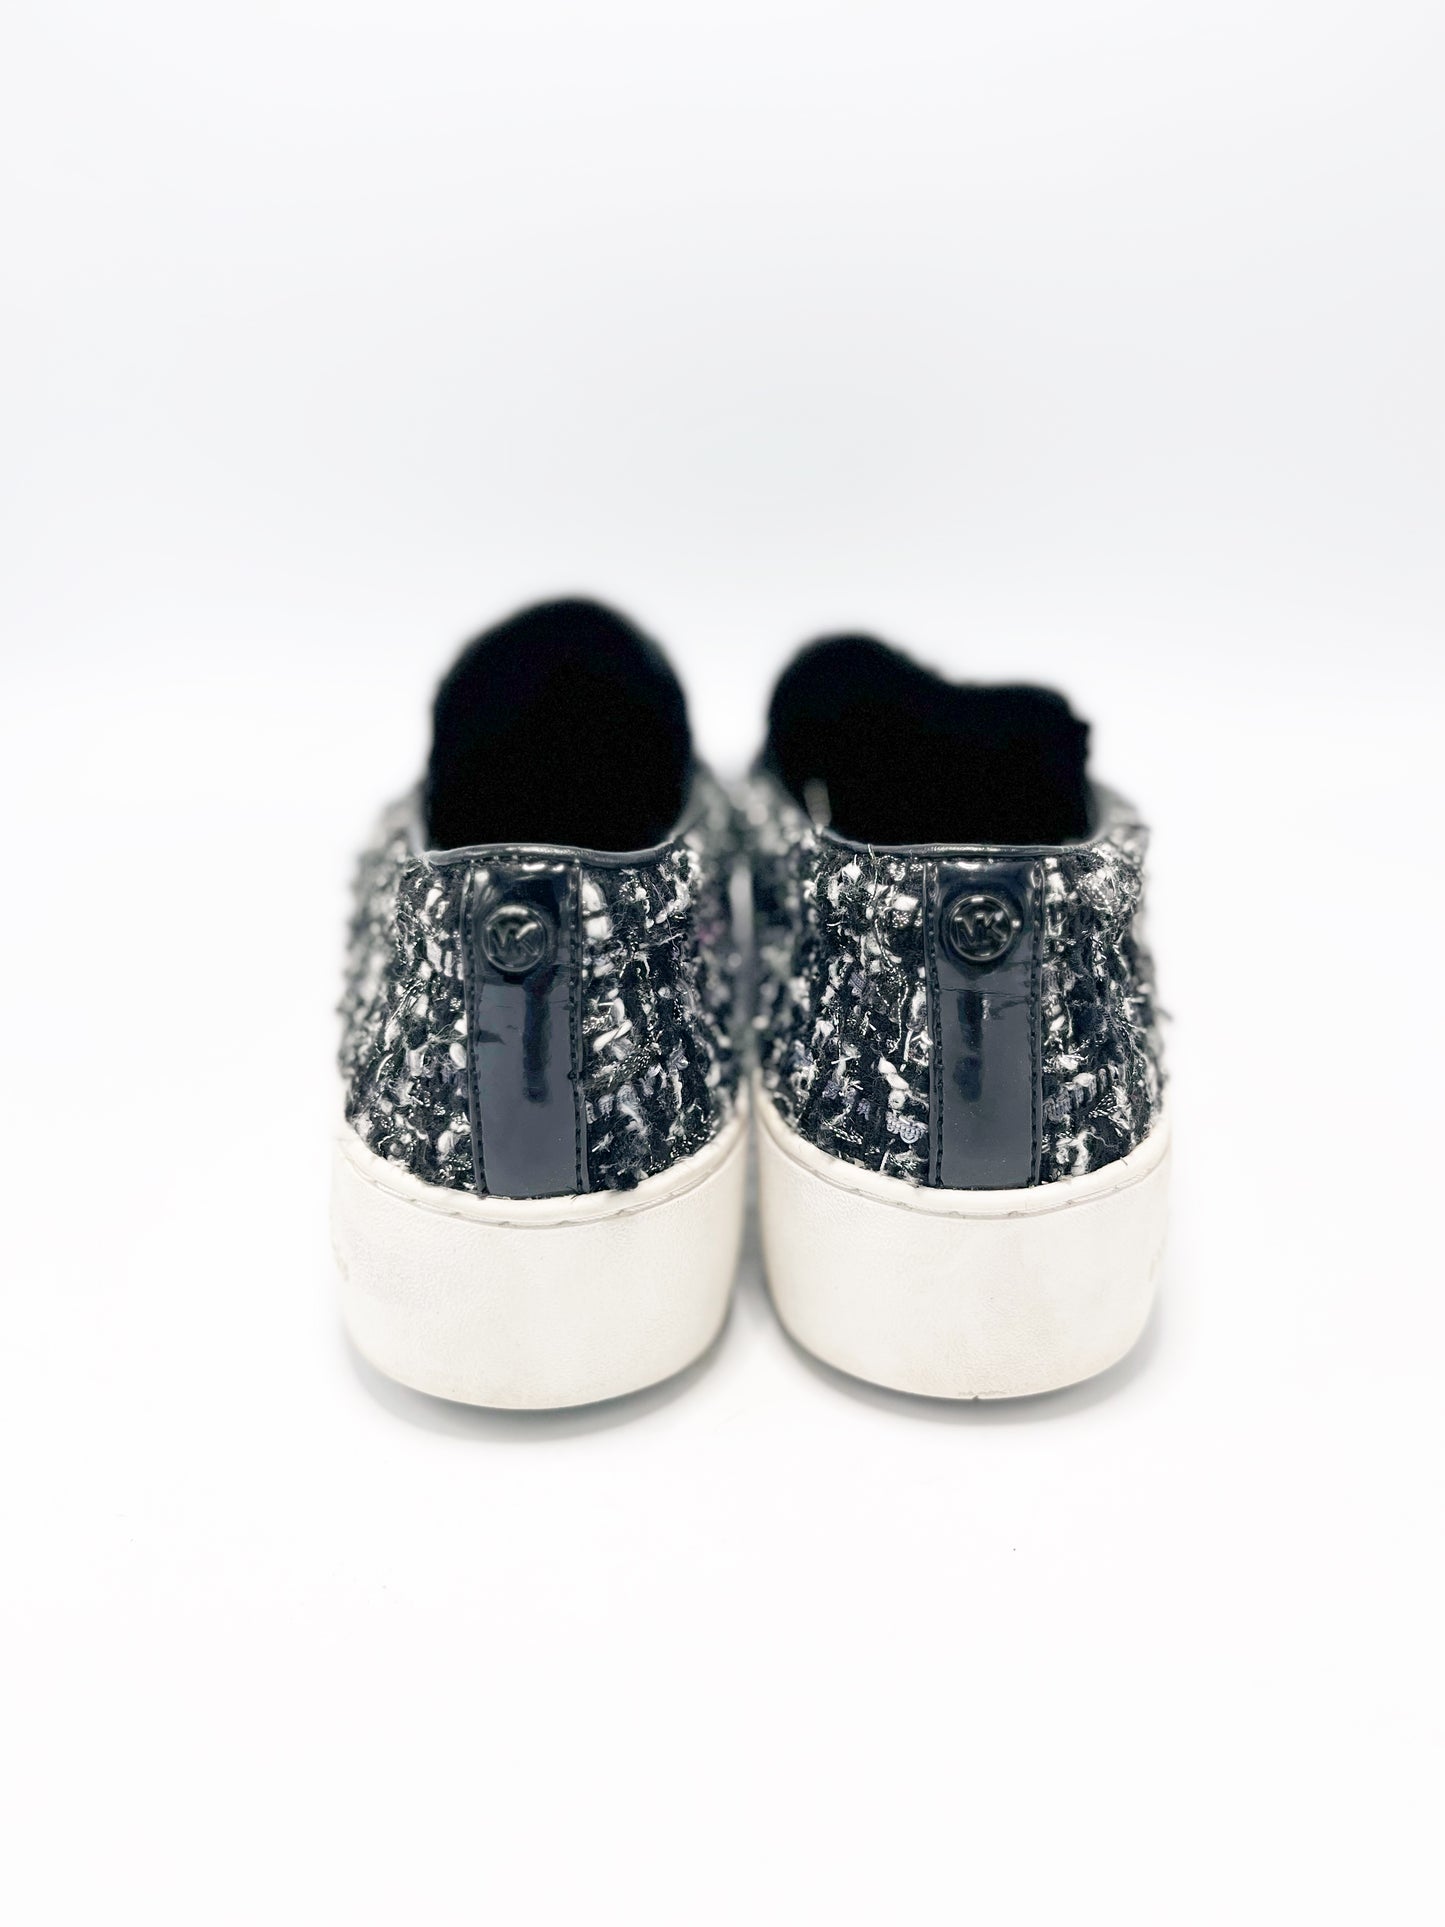 Sneakers Michael Kors Tweed (US 8.5)